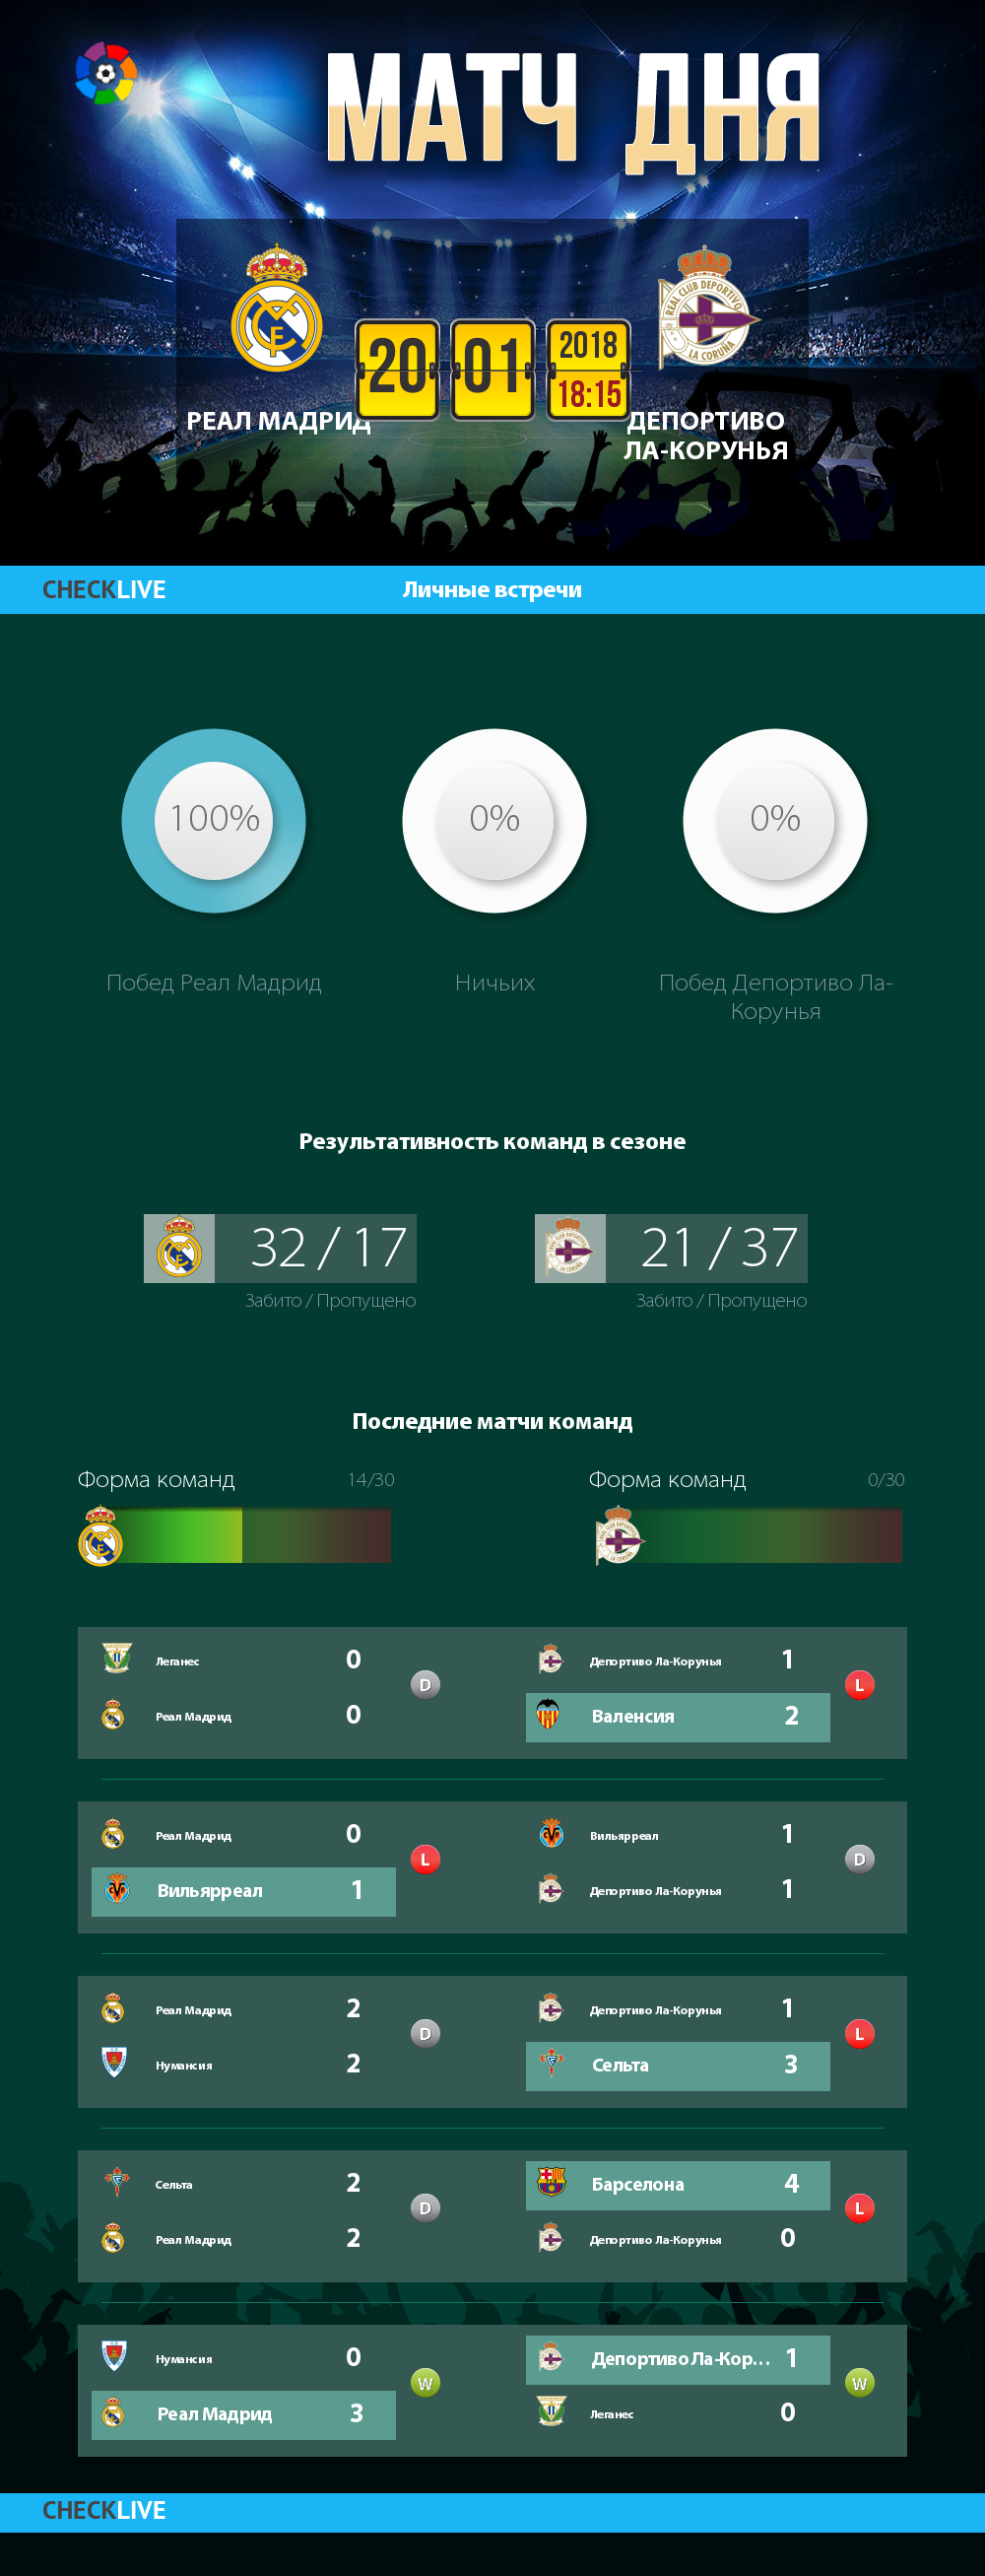 Инфографика Реал Мадрид и Депортиво Ла-Корунья матч дня 20.01.2018